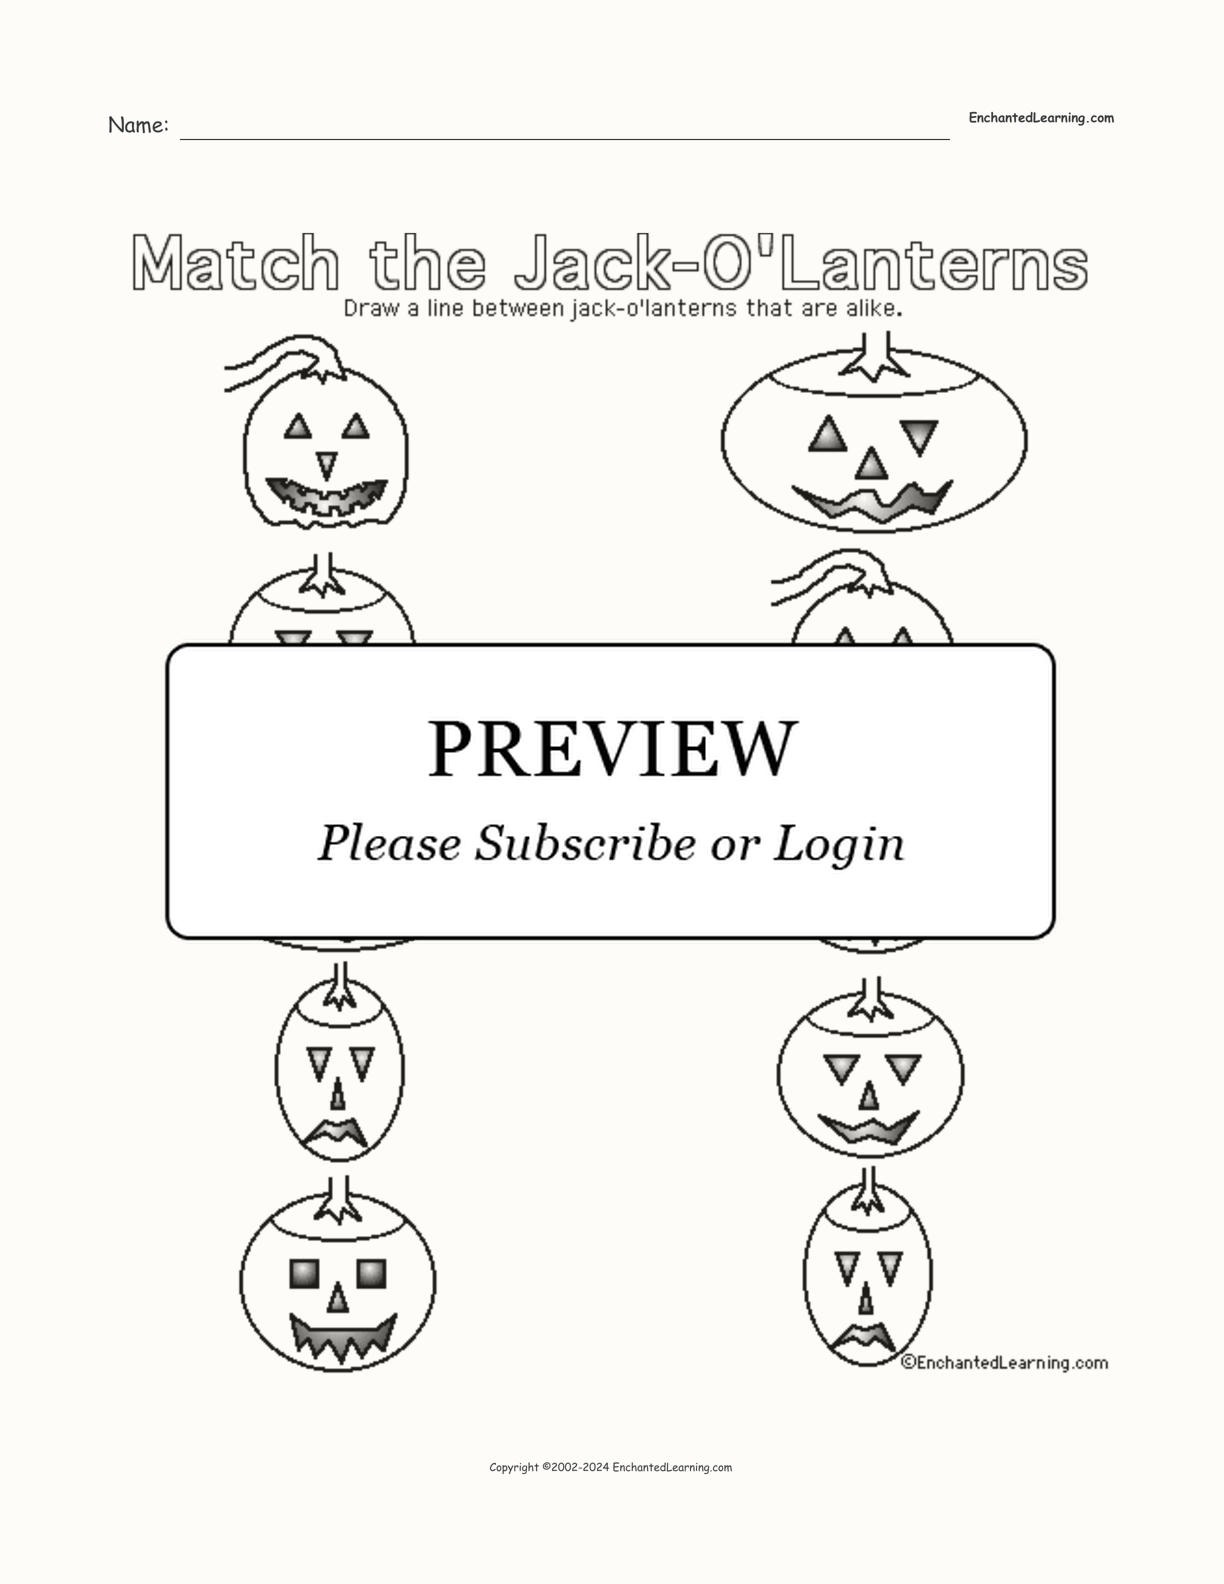 Jack-o'-Lantern Matching Printout interactive worksheet page 1